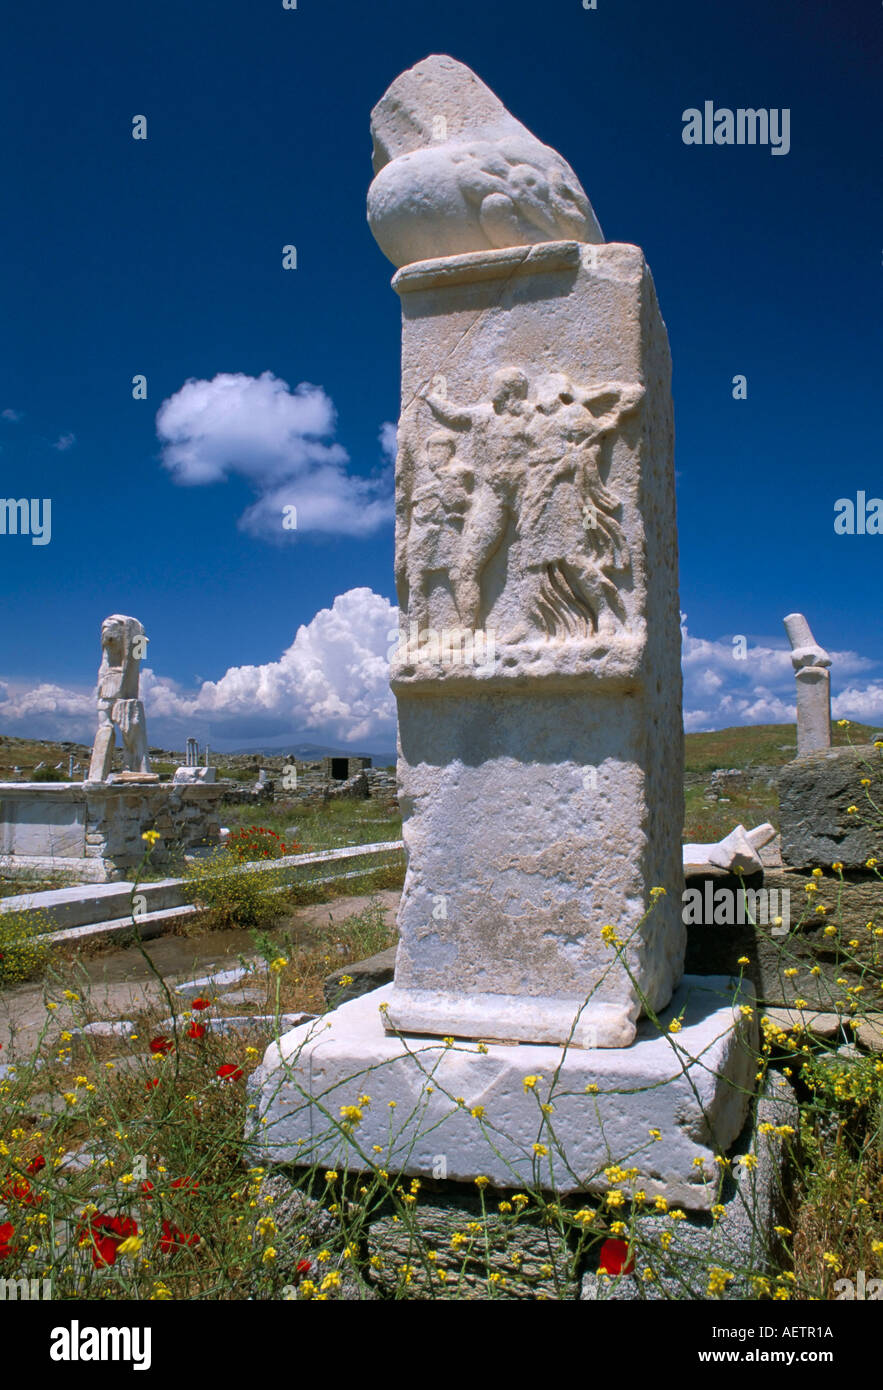 Phallischen Denkmal am Haus von diesem archäologischen Stätte von Delos UNESCO World Heritage Site Kykladen Inseln Griechenland Mediterran Stockfoto